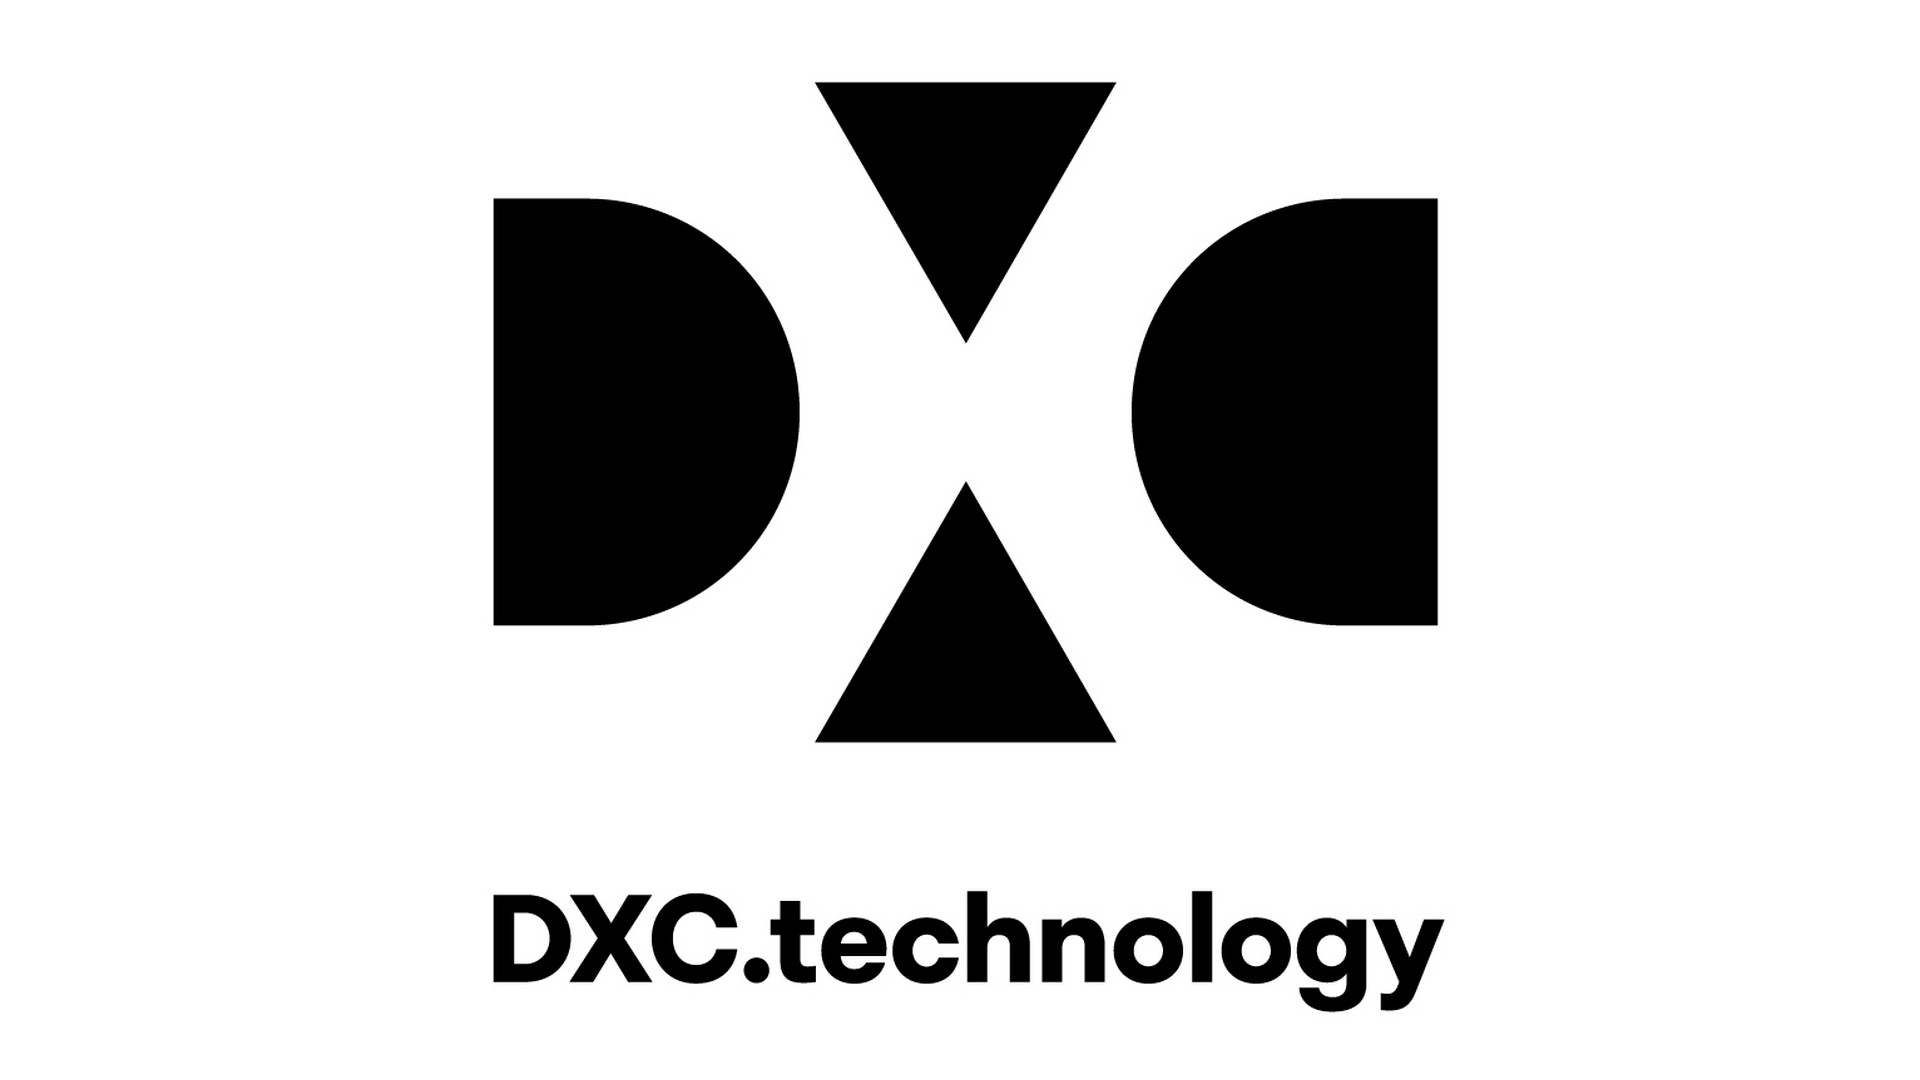 DXC Technology x Paris 2024 (2021)